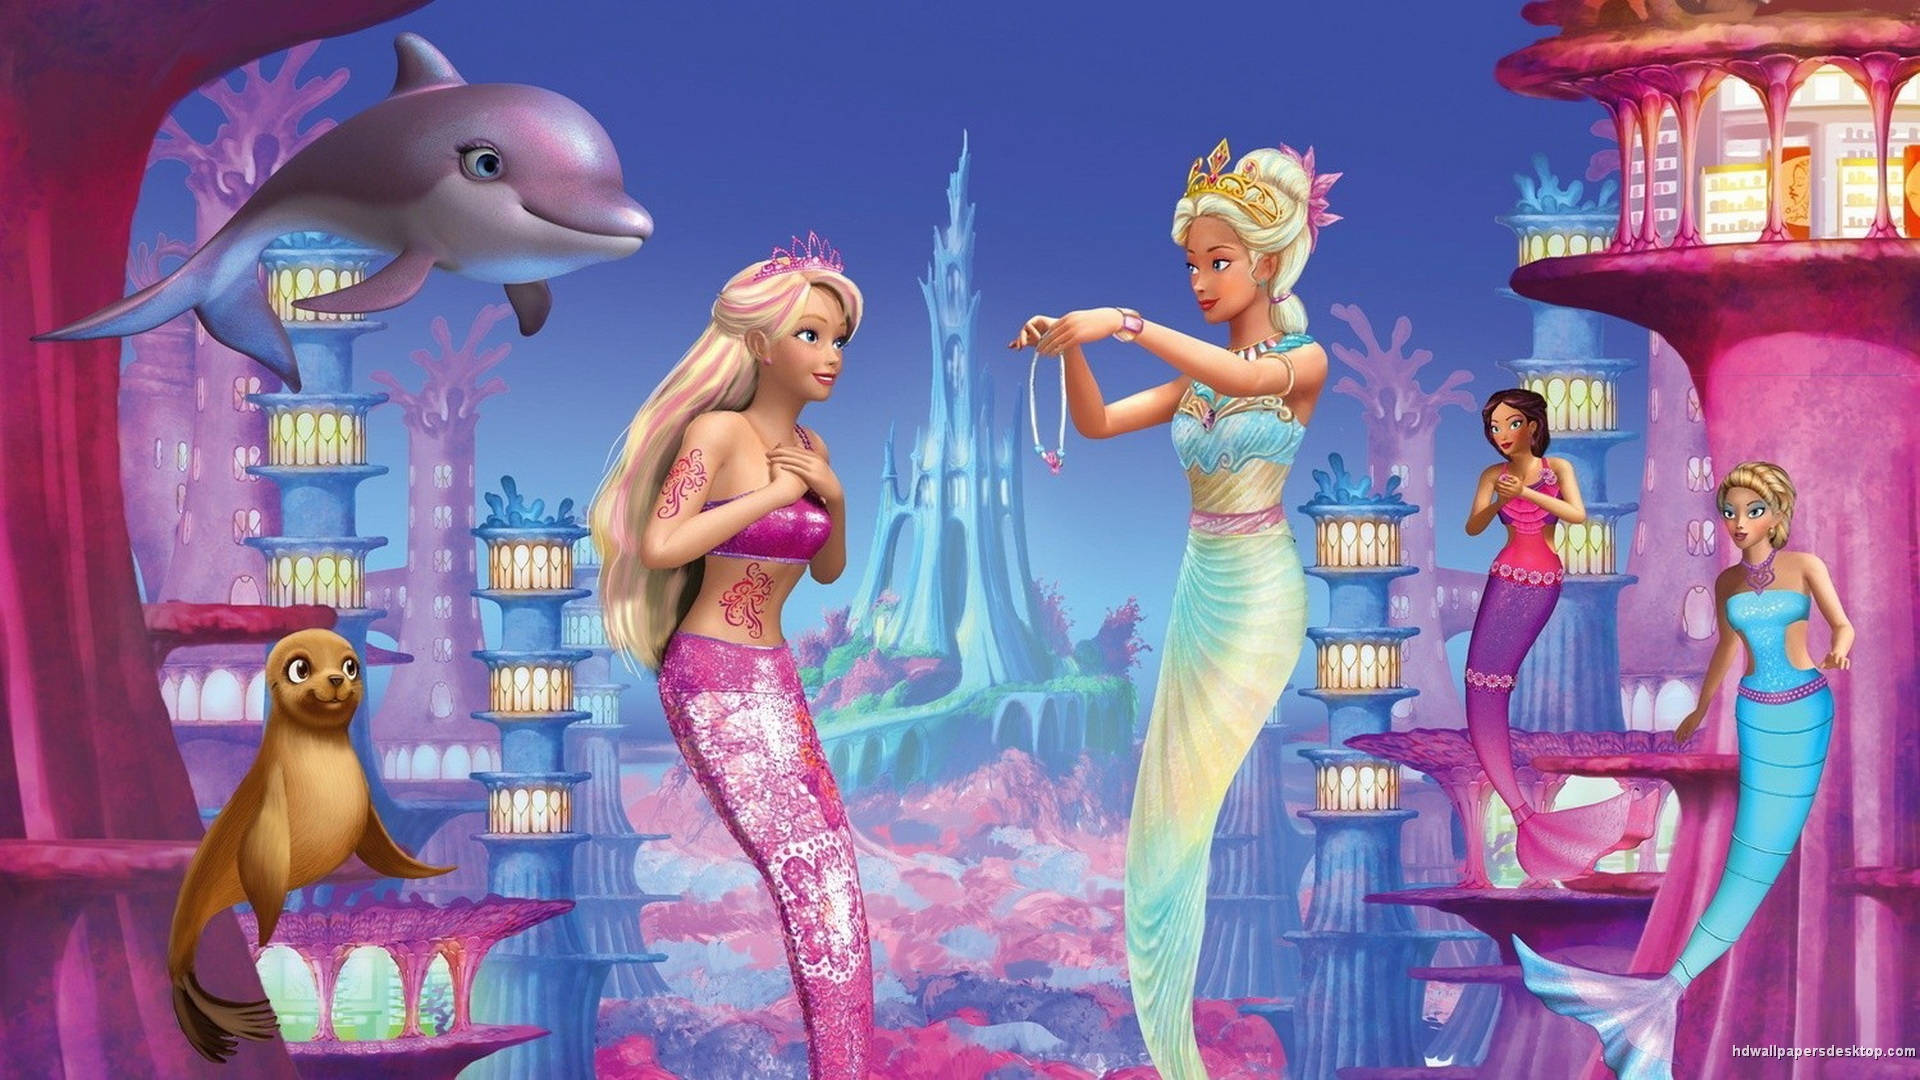 Barbie Princess Merliah in A Mermaid Tale Wallpaper